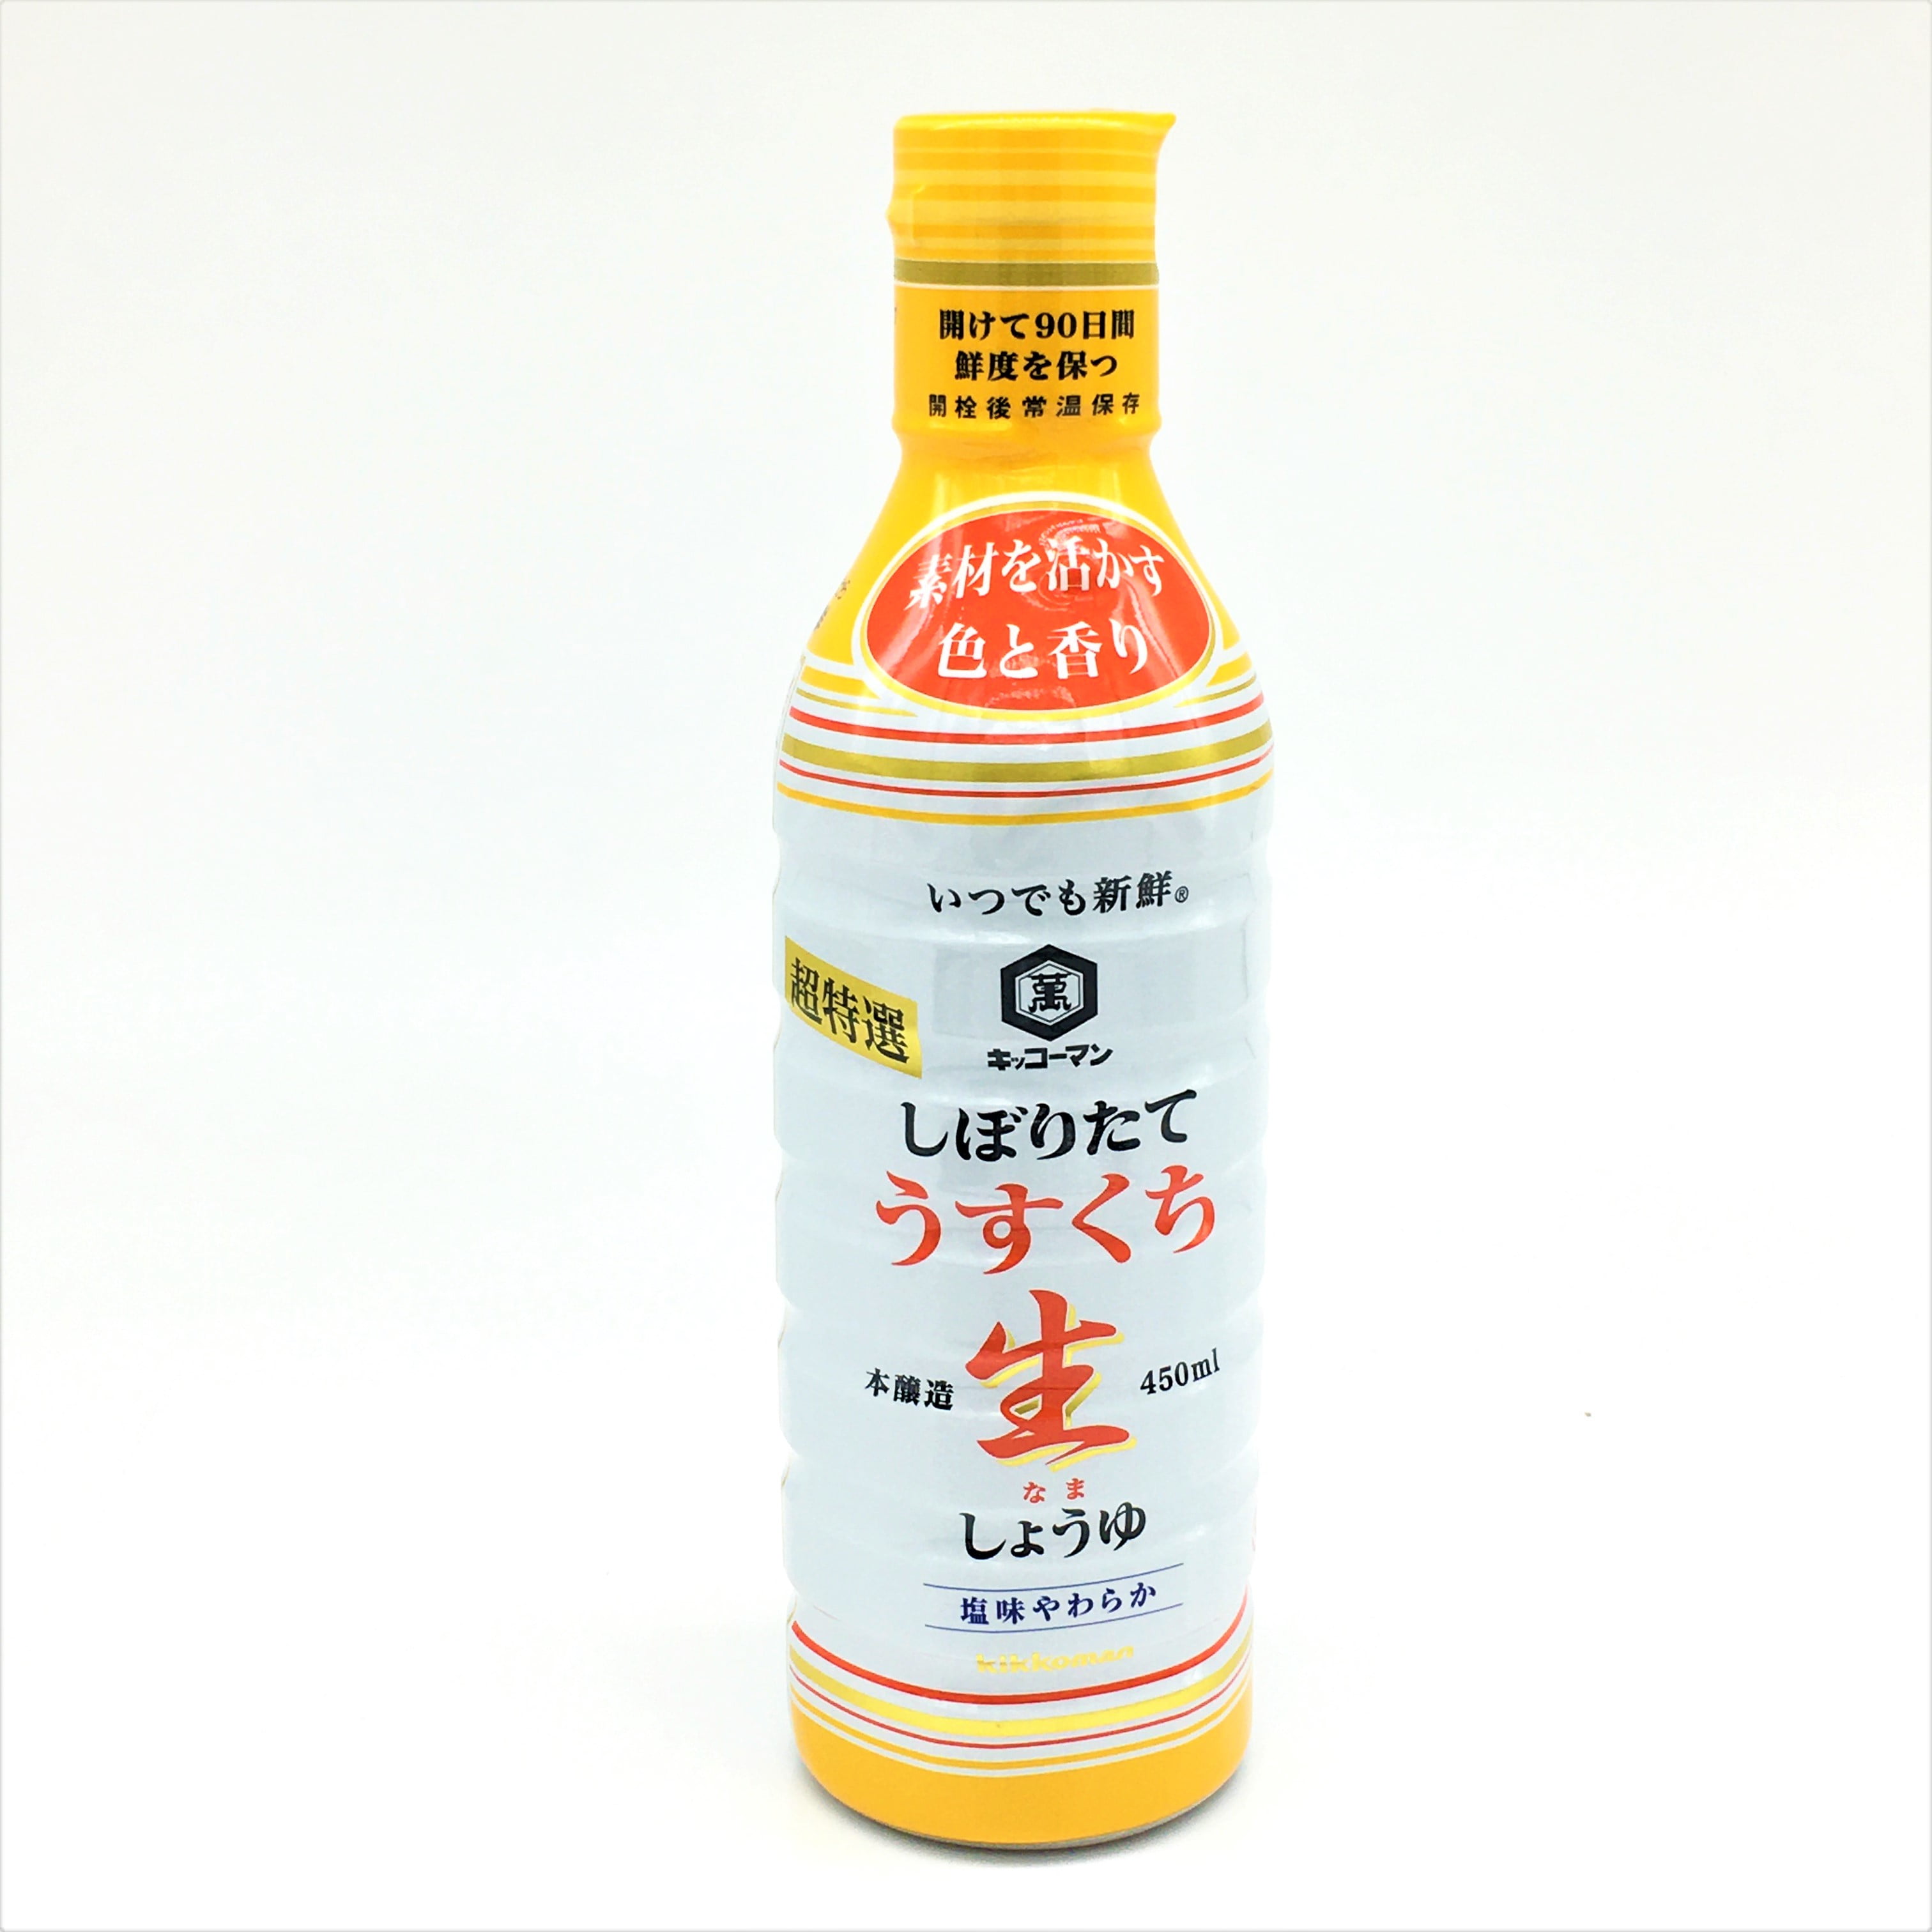 Sauce Soja Light - Pikorome - 150ml